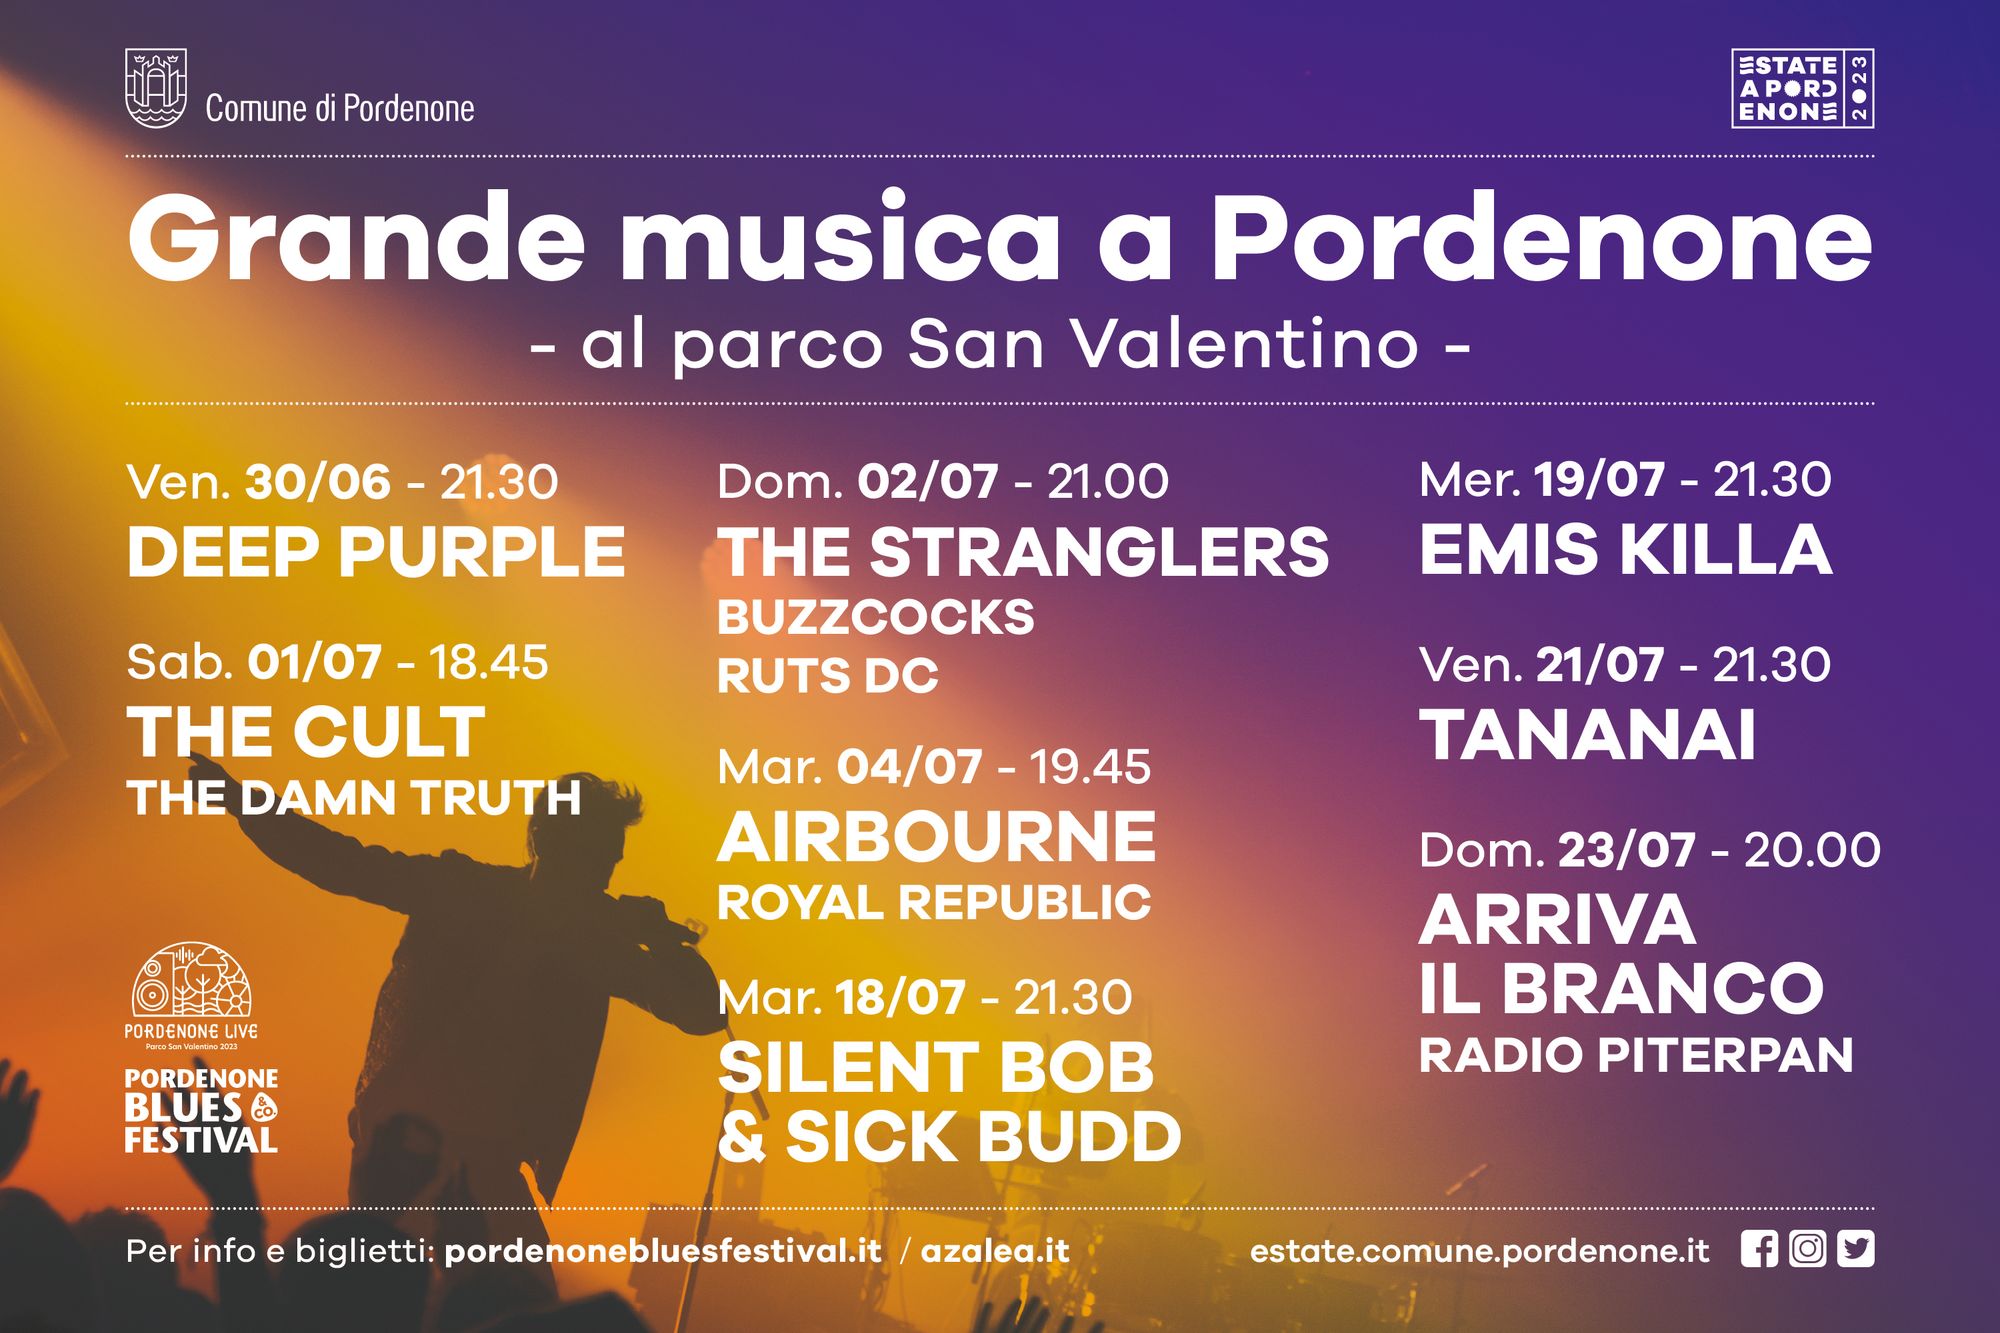 Parco San Valentino, il palcoscenico dell’estate della musica a Pordenone. Si parte alla grande domani sera con i Deep Purple.